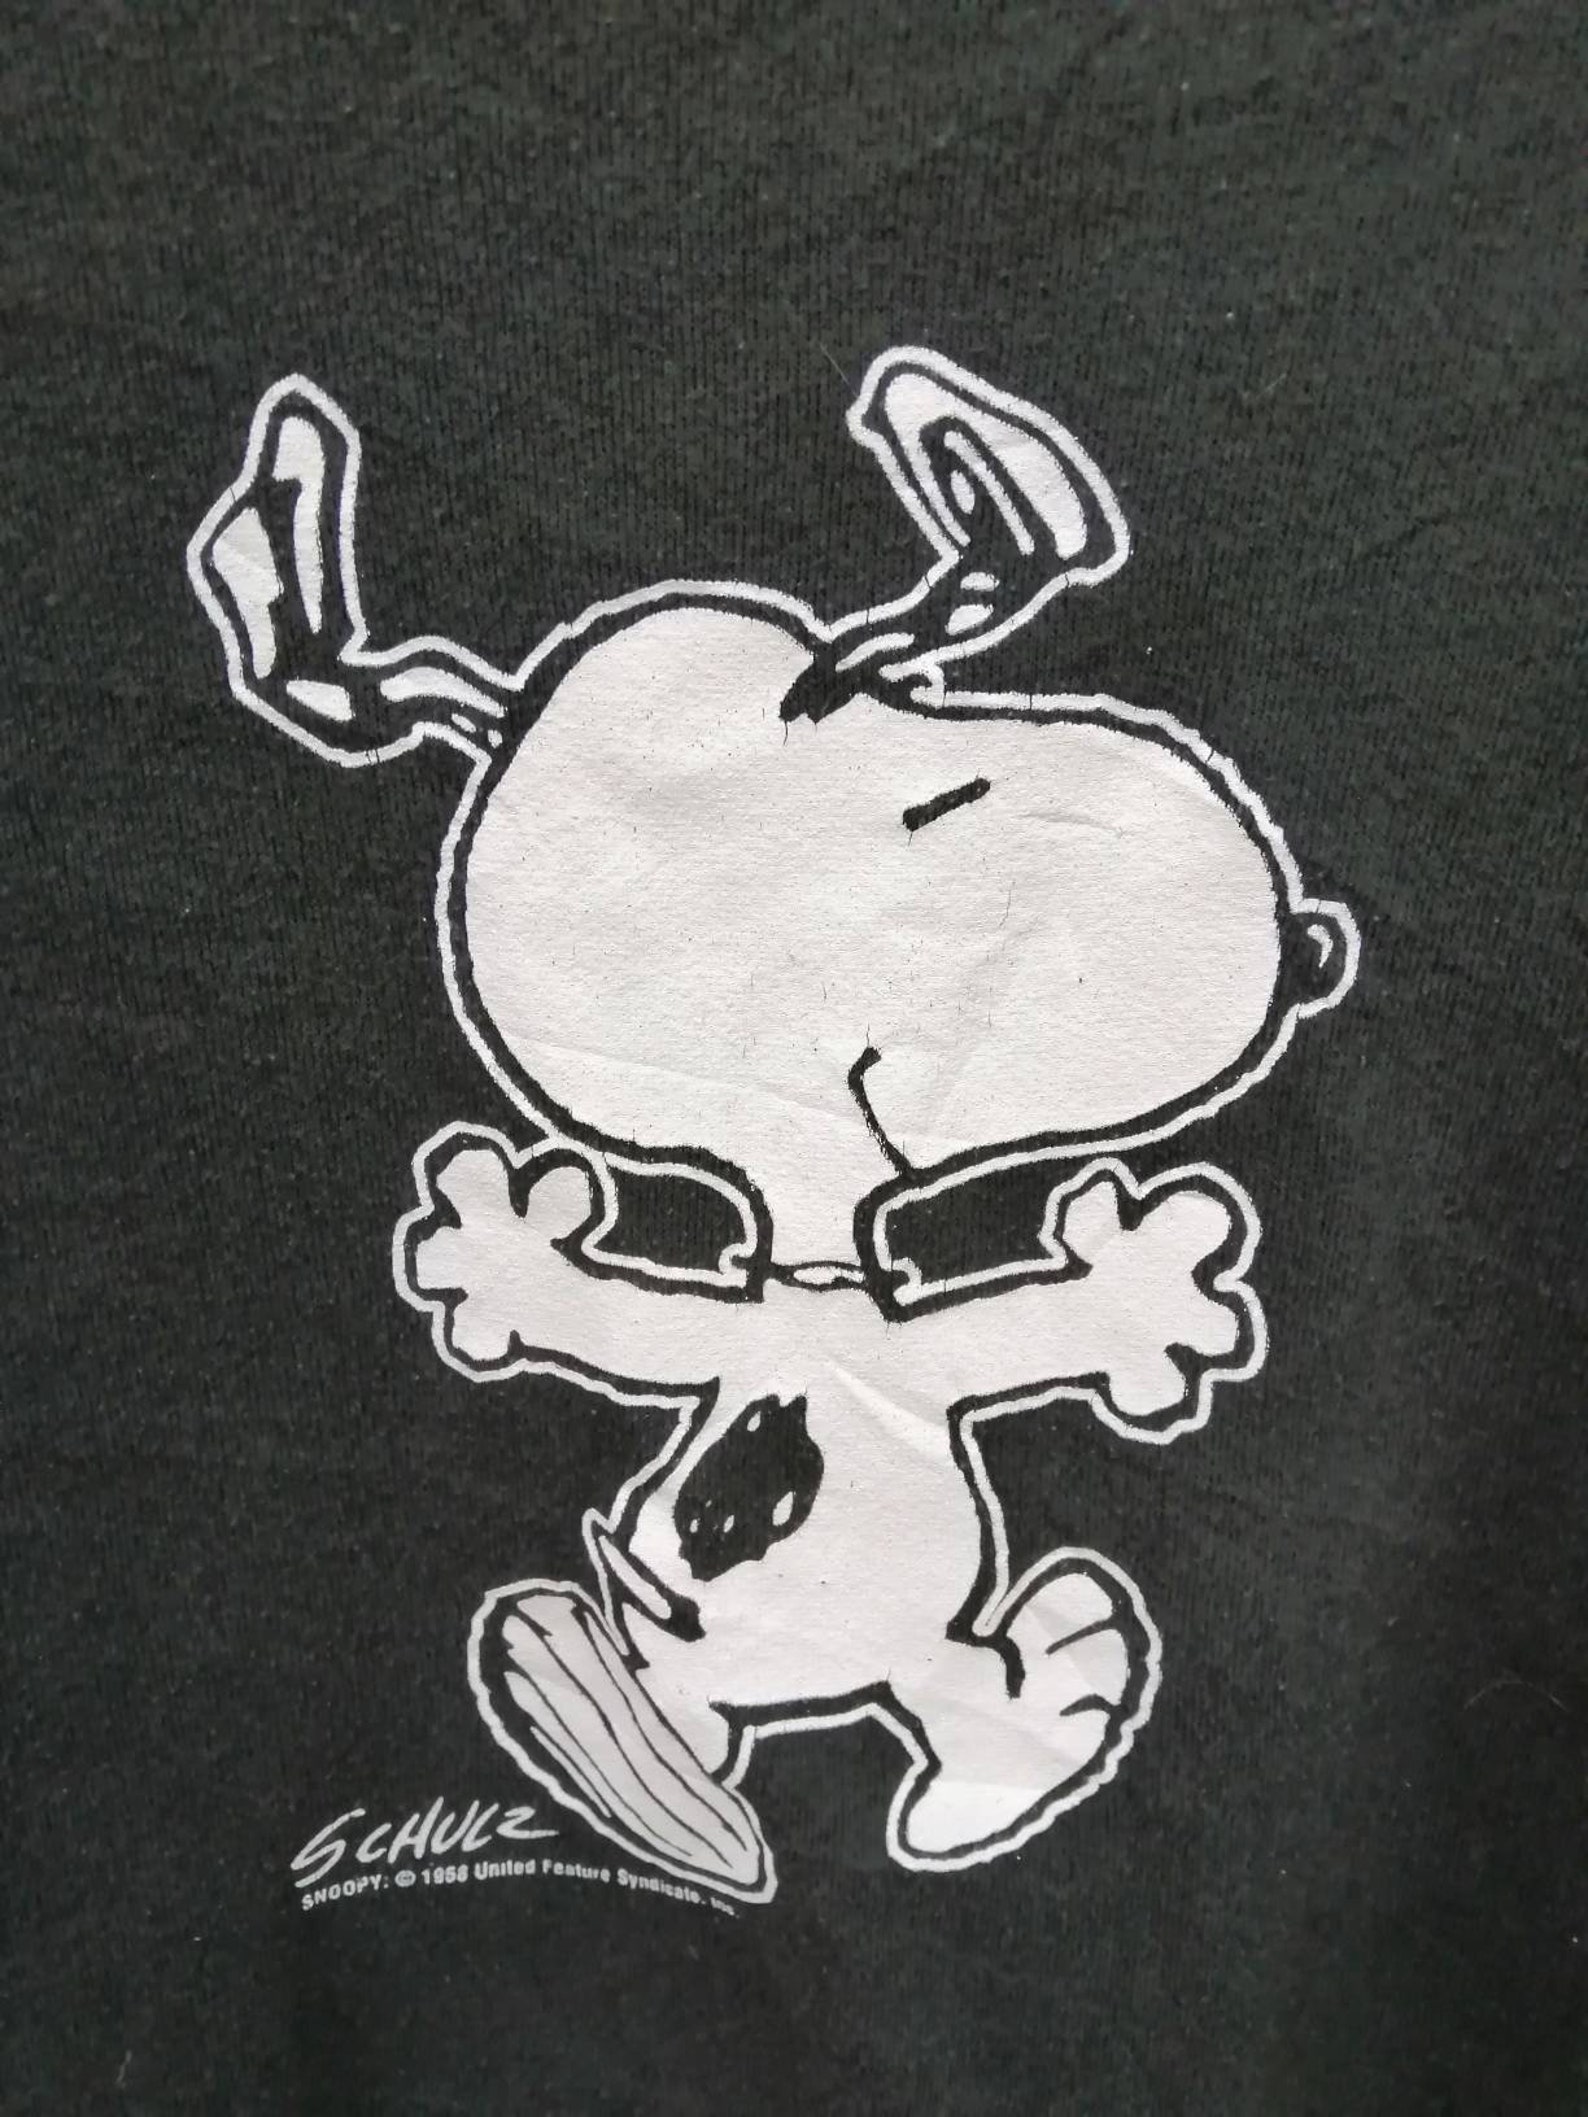 SCHULZ PEANUTS Snoopy Sweatshirt Pullover Vintage 50's | Etsy